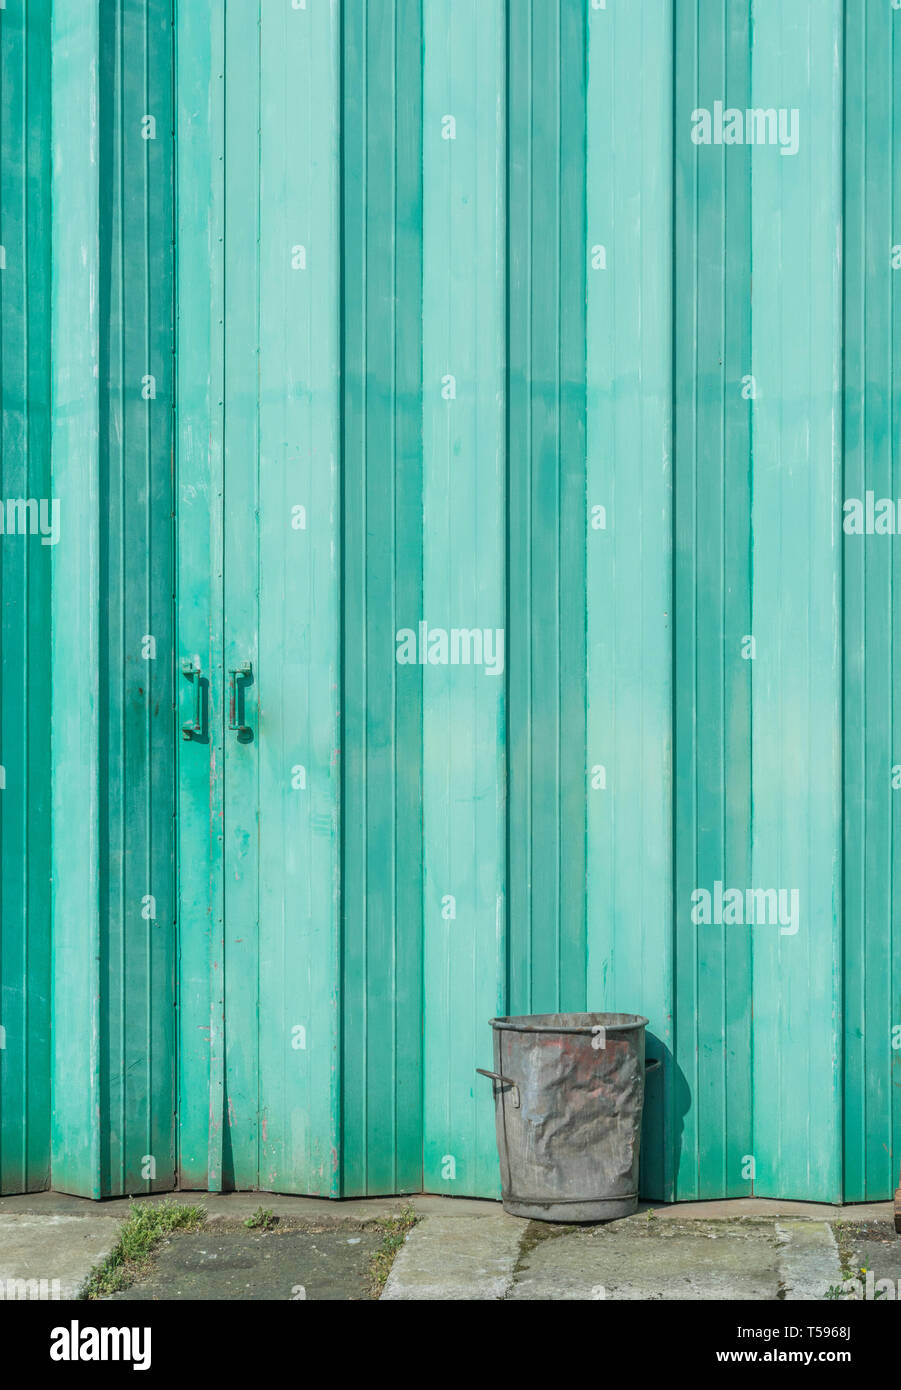 Vieux métal poubelle à l'extérieur portes industrielles peint en vert. Résumé L'industrie, métaphore, isolés ou à volets concept écartés de la discussion. Banque D'Images